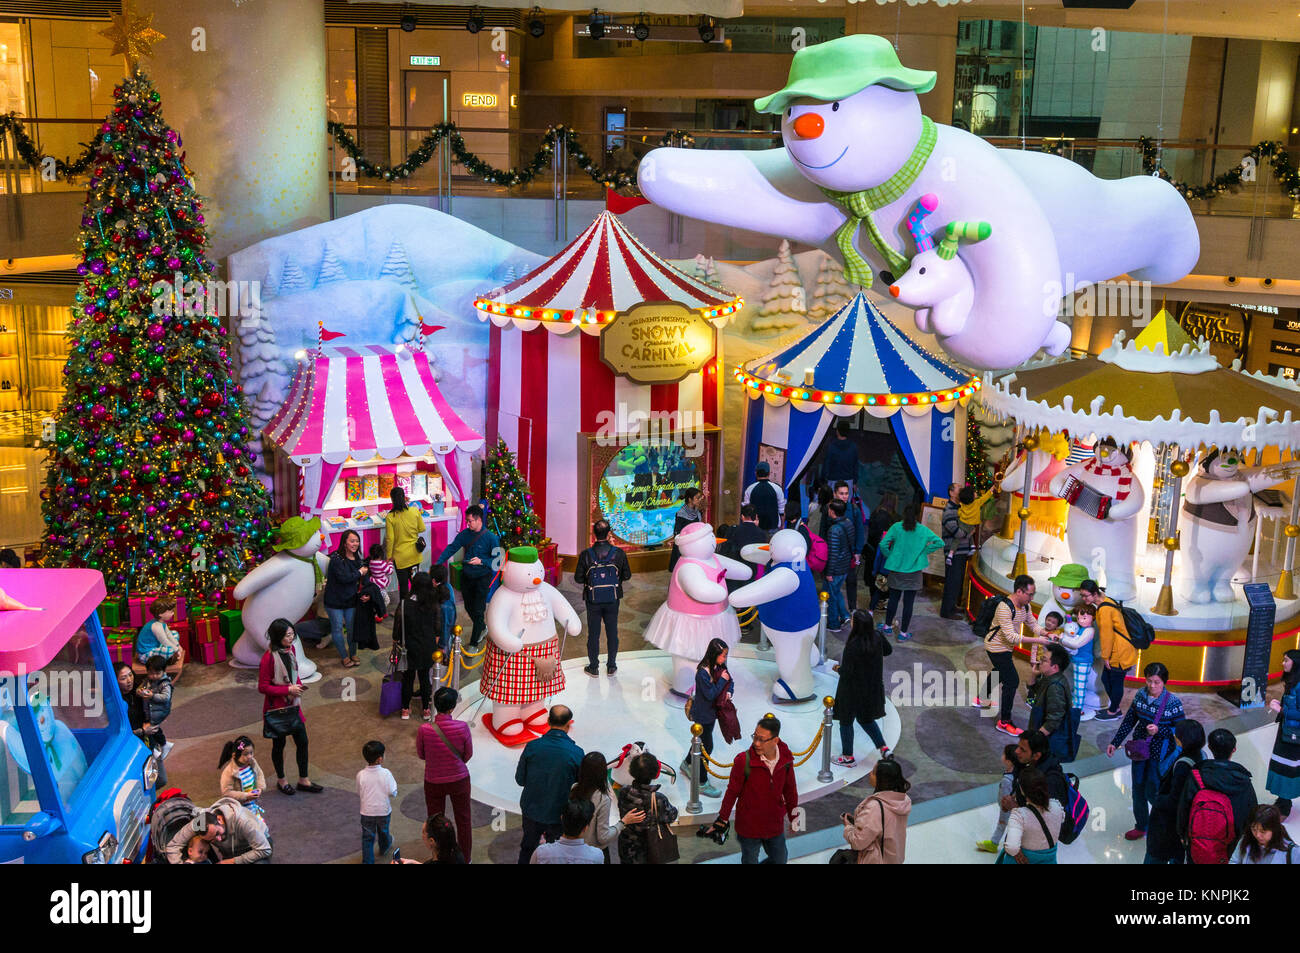 Gaudy Christmas display at a shopping mall, Elements Mall, in Hong Kong Stock Photo